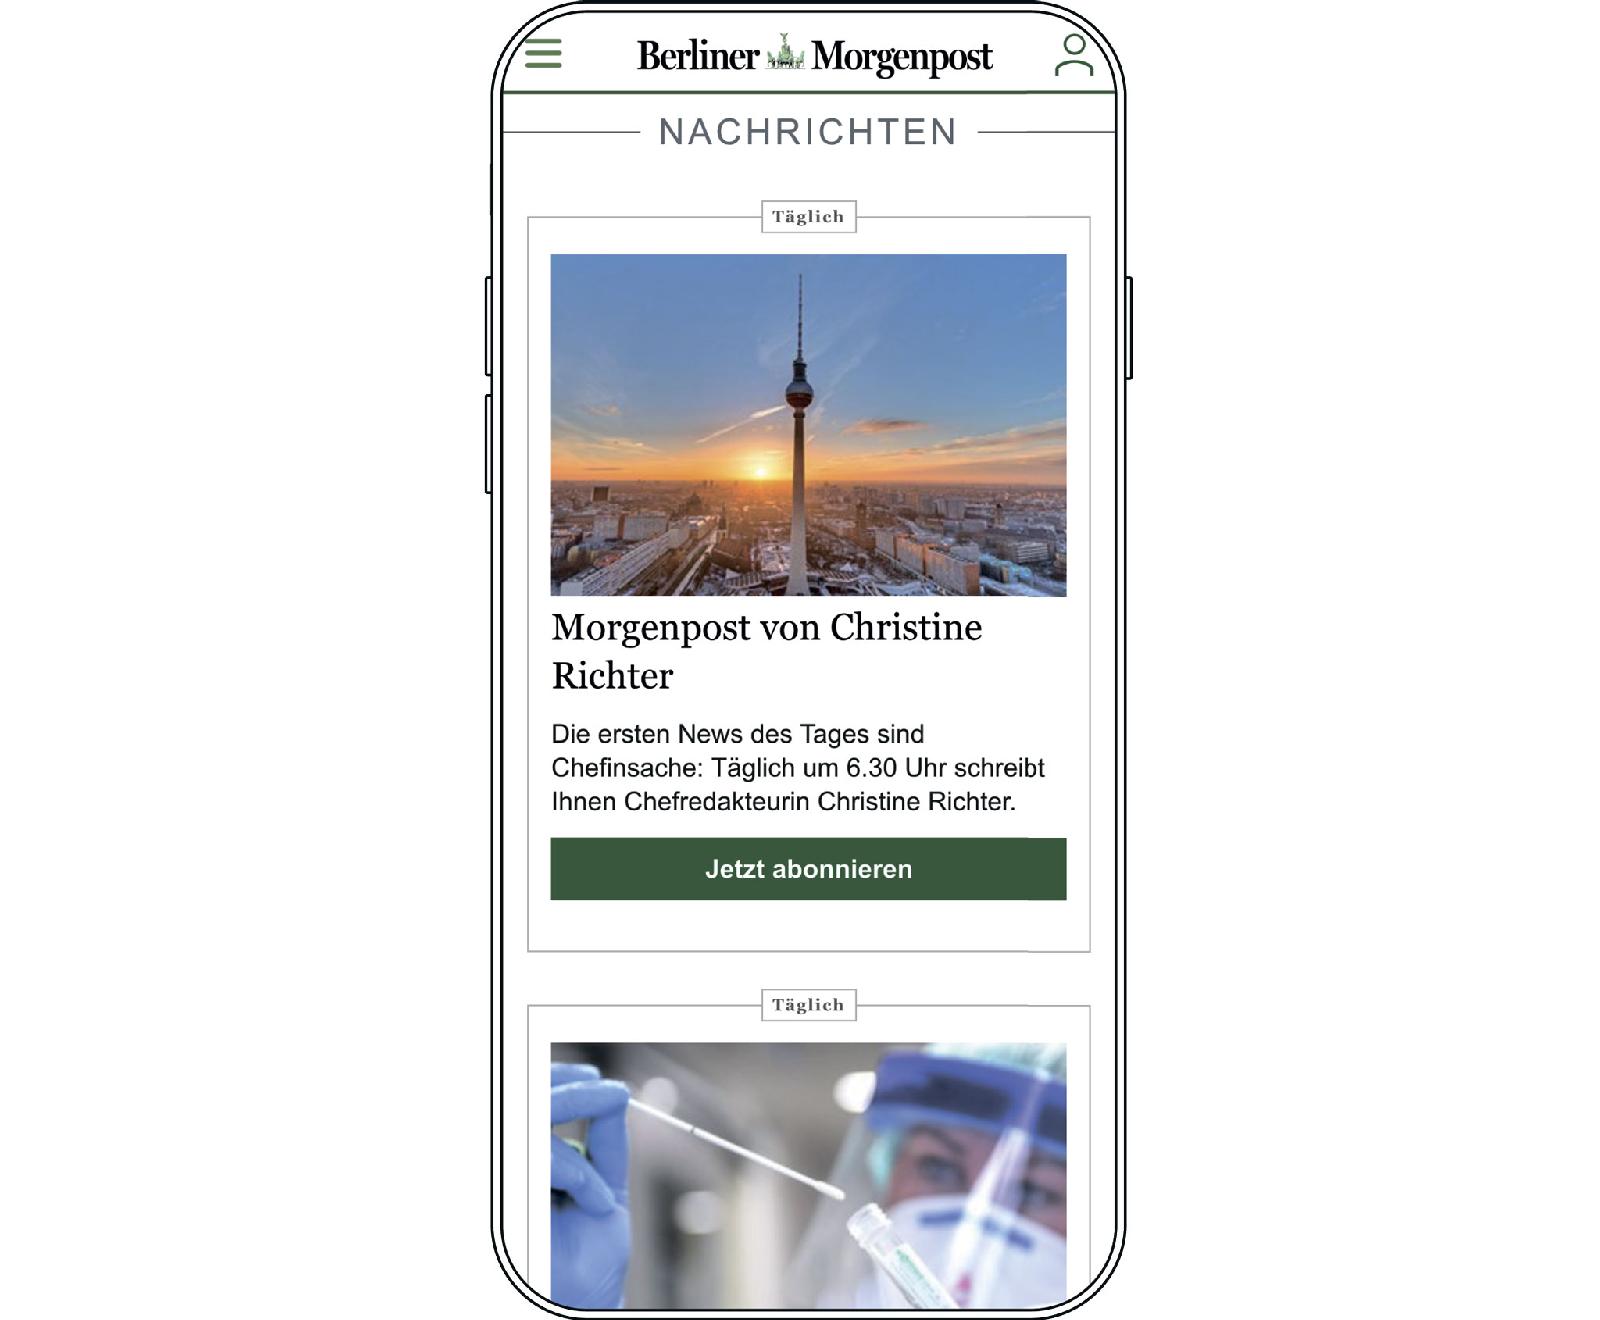 Газета Berliner Morgenpost (Funke Mediengruppe) рассылает бюллетени о политике, экономике, недвижимости, гастрономии, туризме, спорте, горячих и хороших новостях